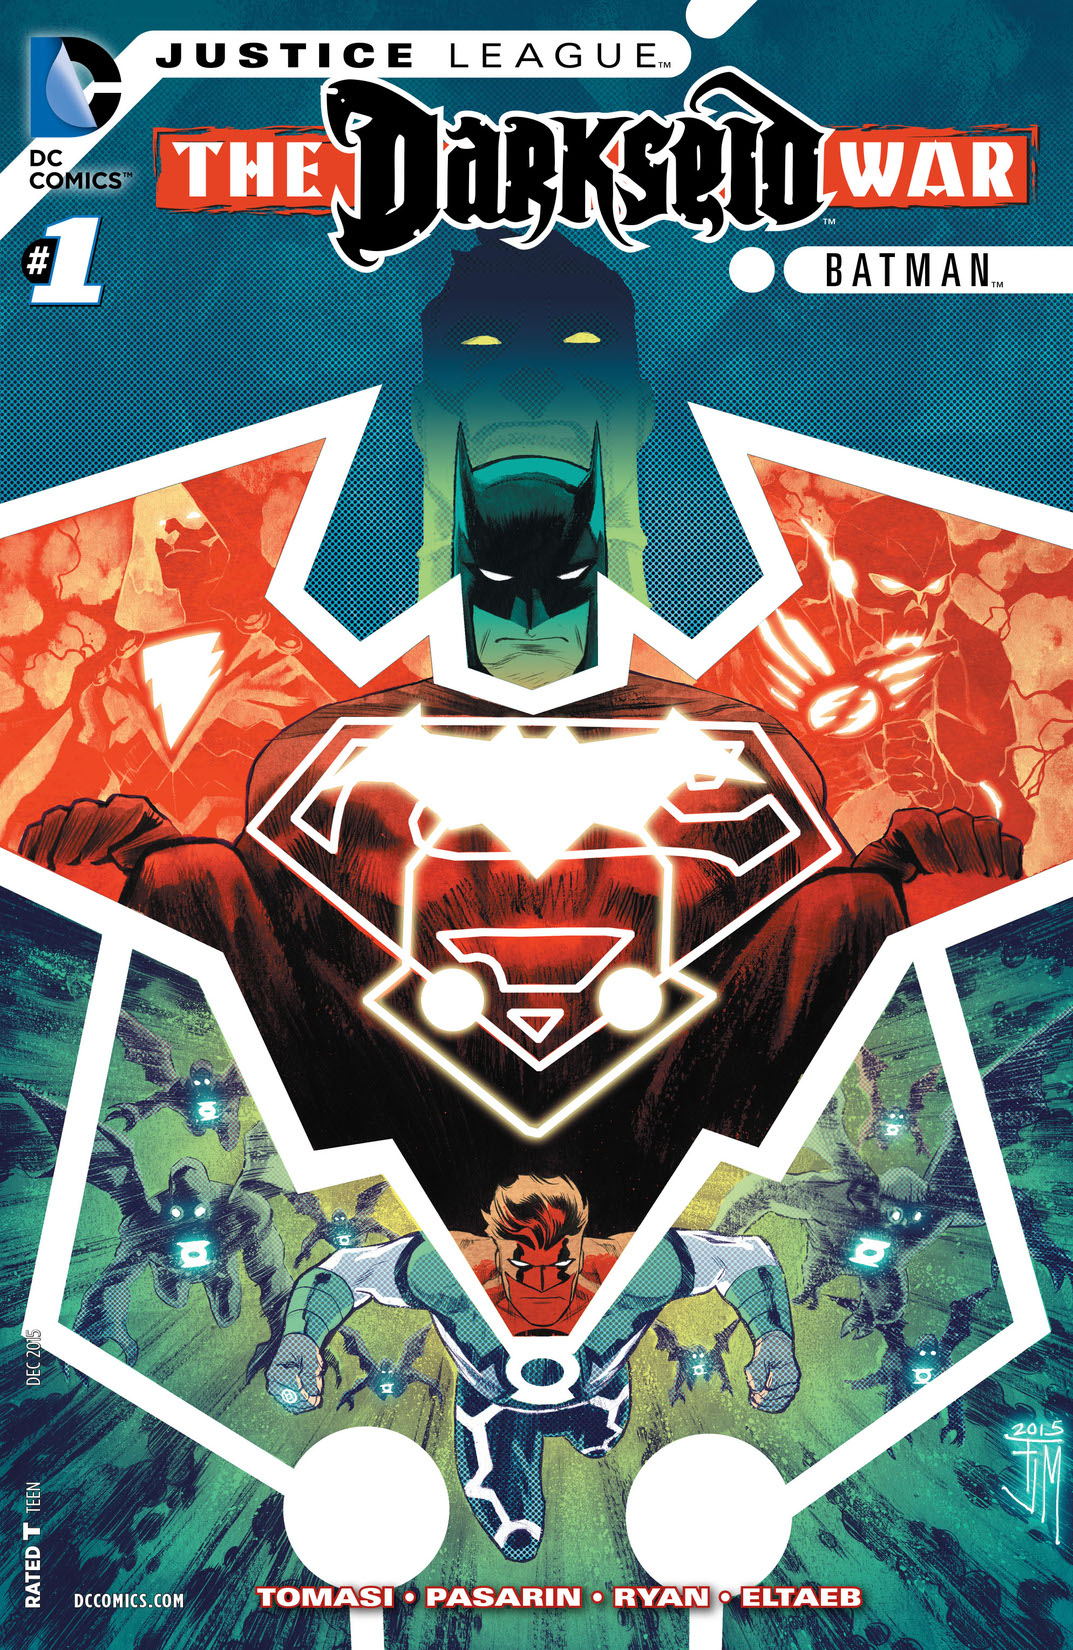 Justice League: Darkseid War: Batman #1 preview images